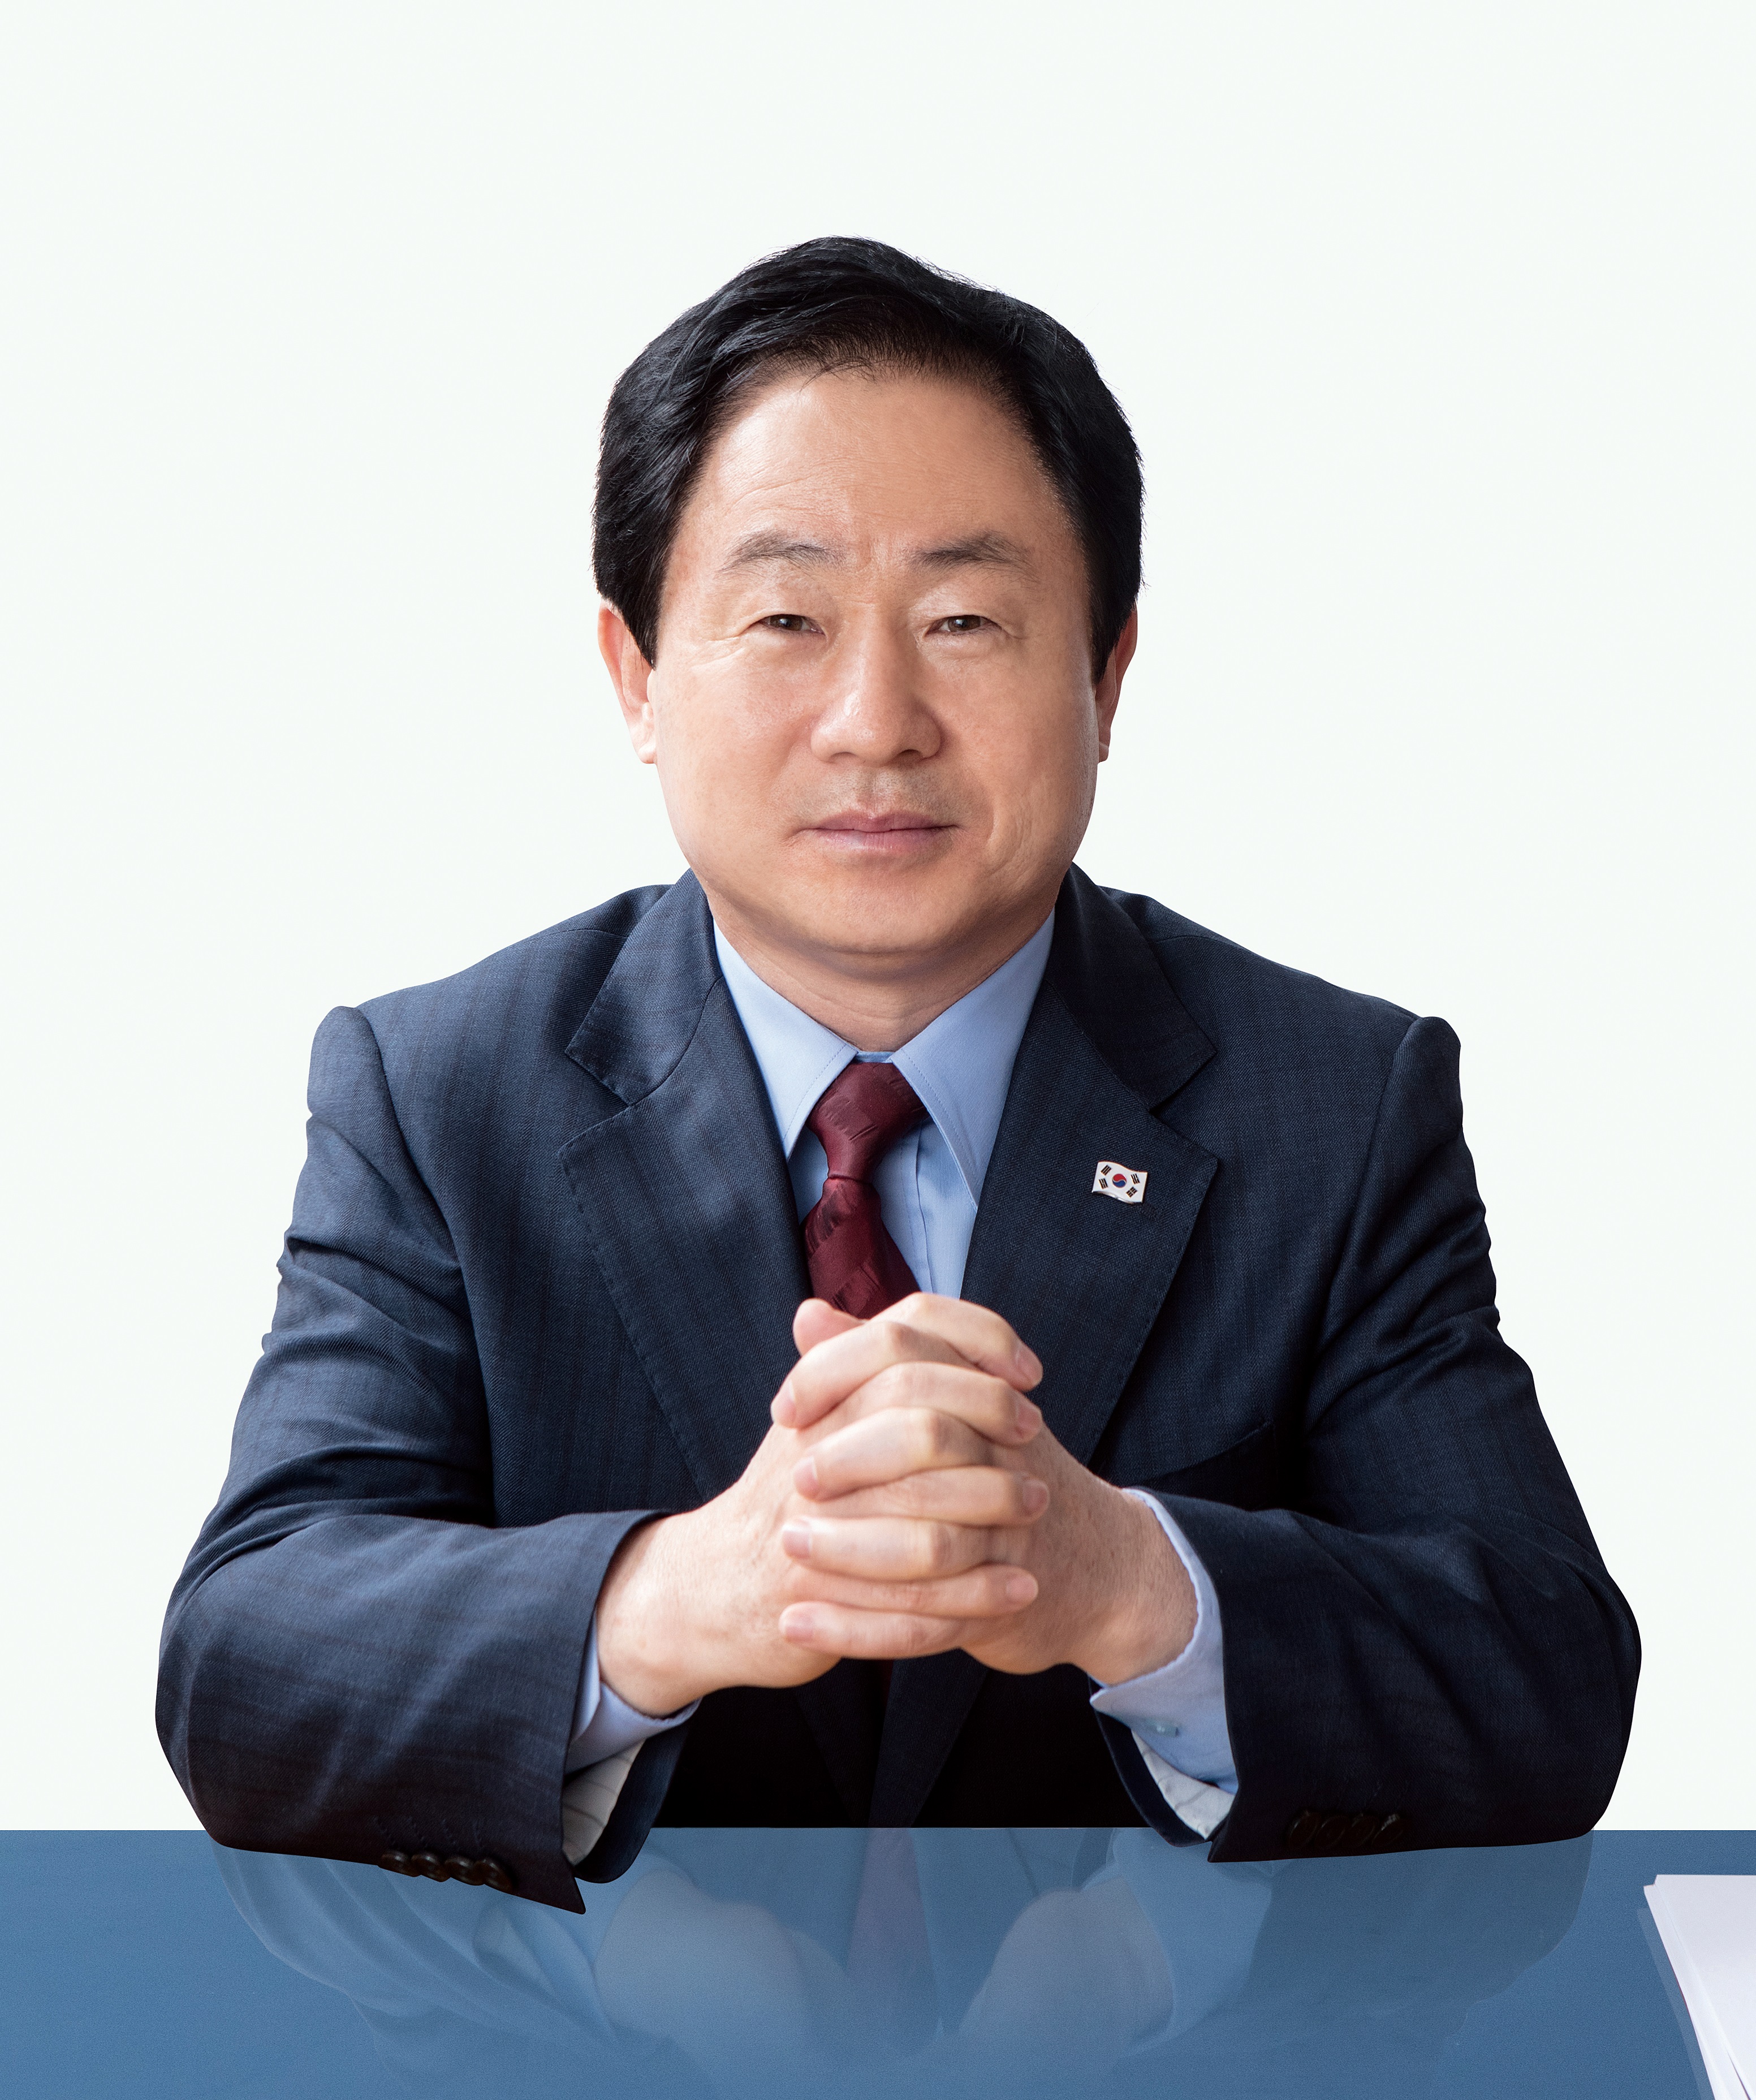 주광덕 의원,서울중앙지검으로의 과다한 검사 파견과 인사권 문제 지적 제기